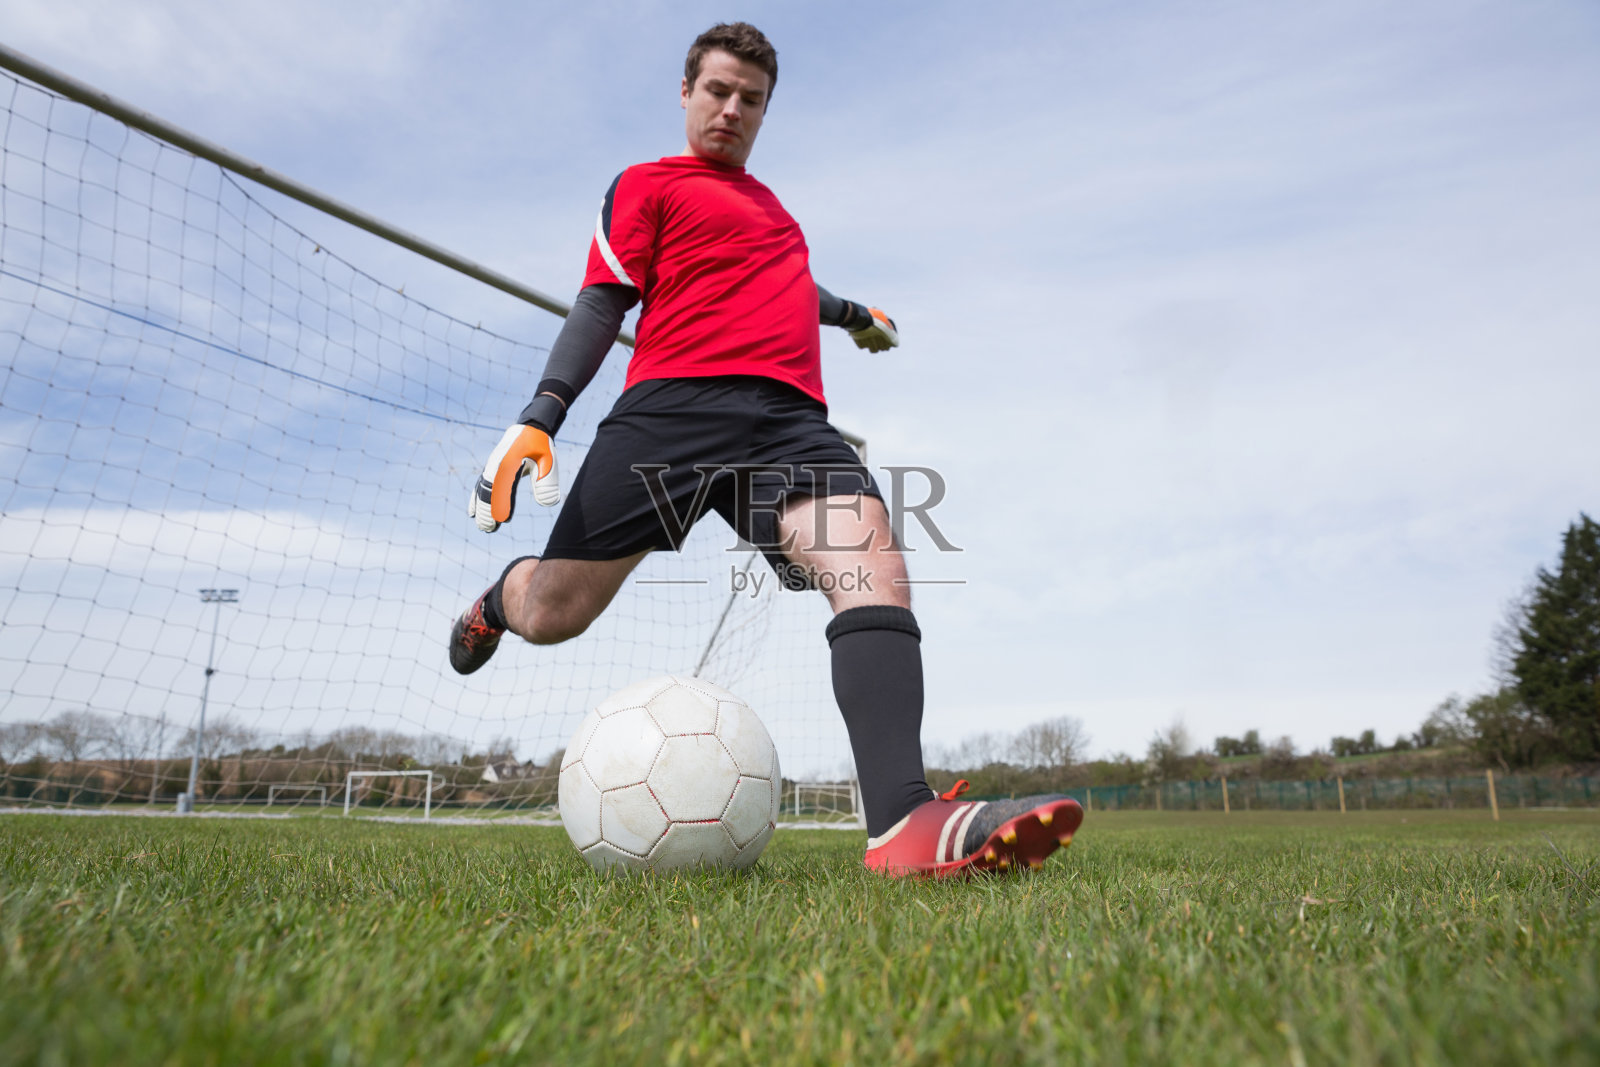 身着红色衣服的守门员将球踢出球门照片摄影图片